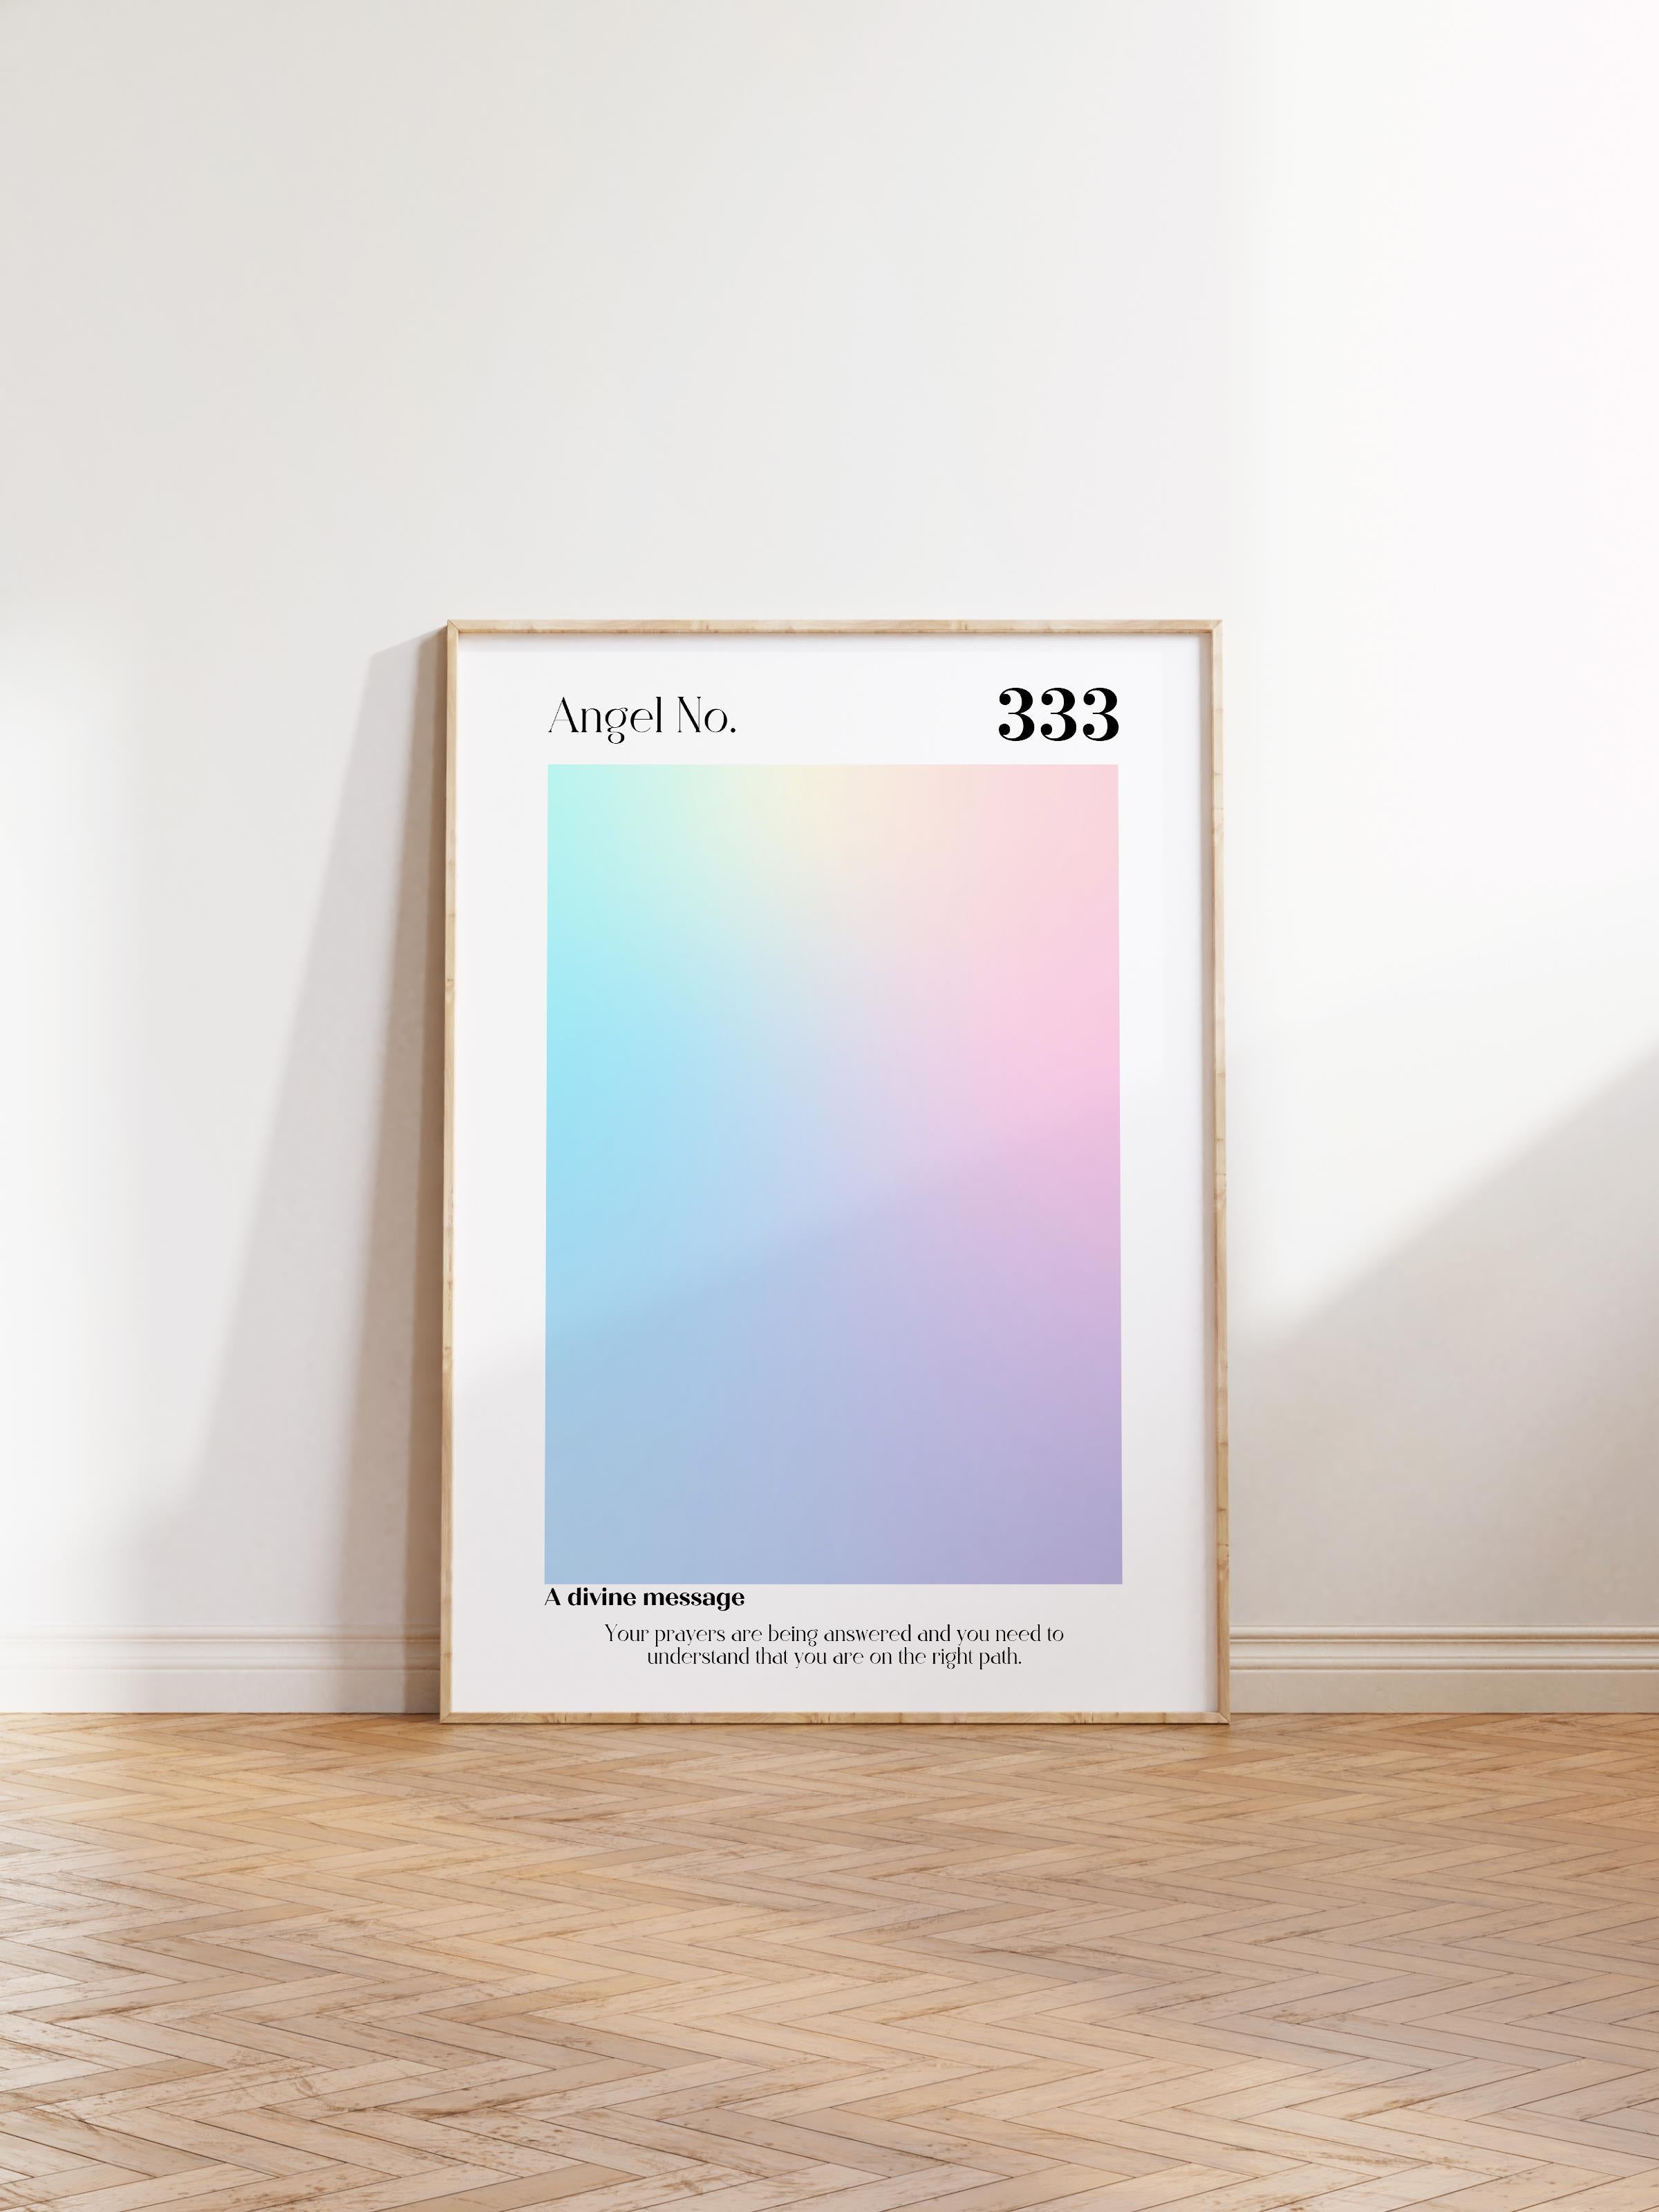 Çerçevesiz Poster, Aura Serisi NO:128 - 333 - Renkli, Melek Numaraları, Renkli Poster